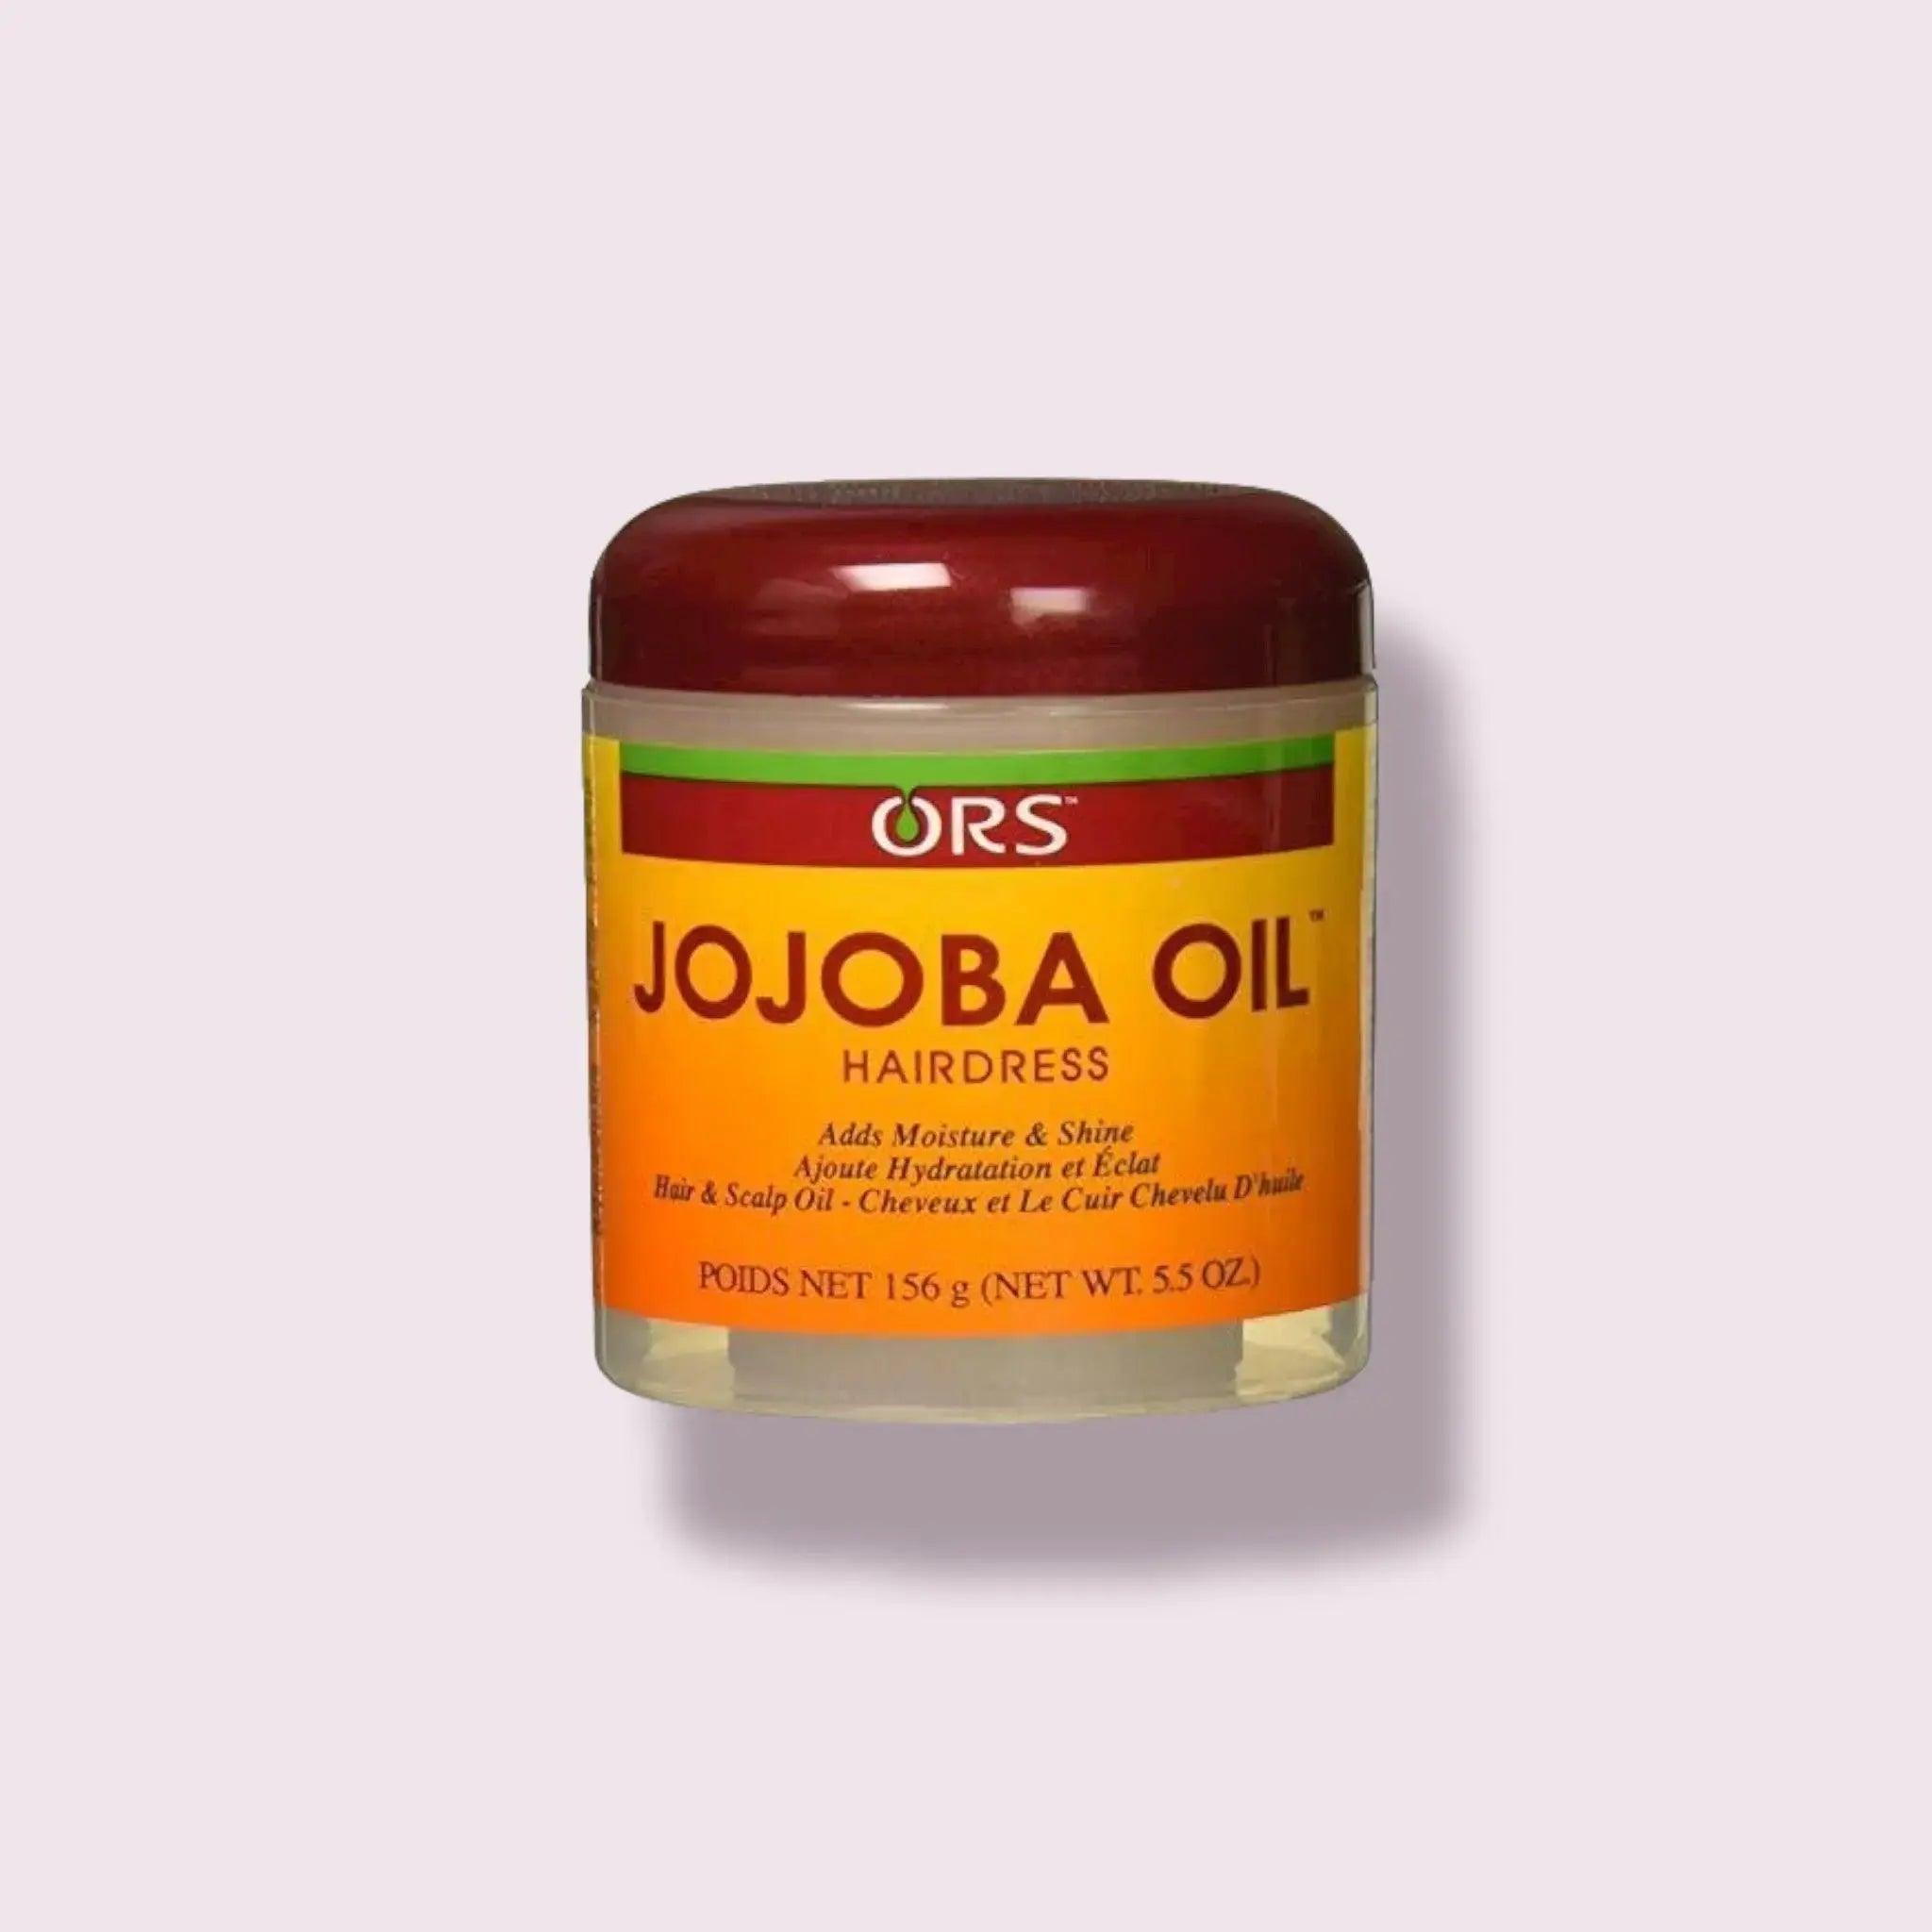 ORS Jojoba Oil Hair dress 5.5 oz / 156g - Honesty Sales U.K